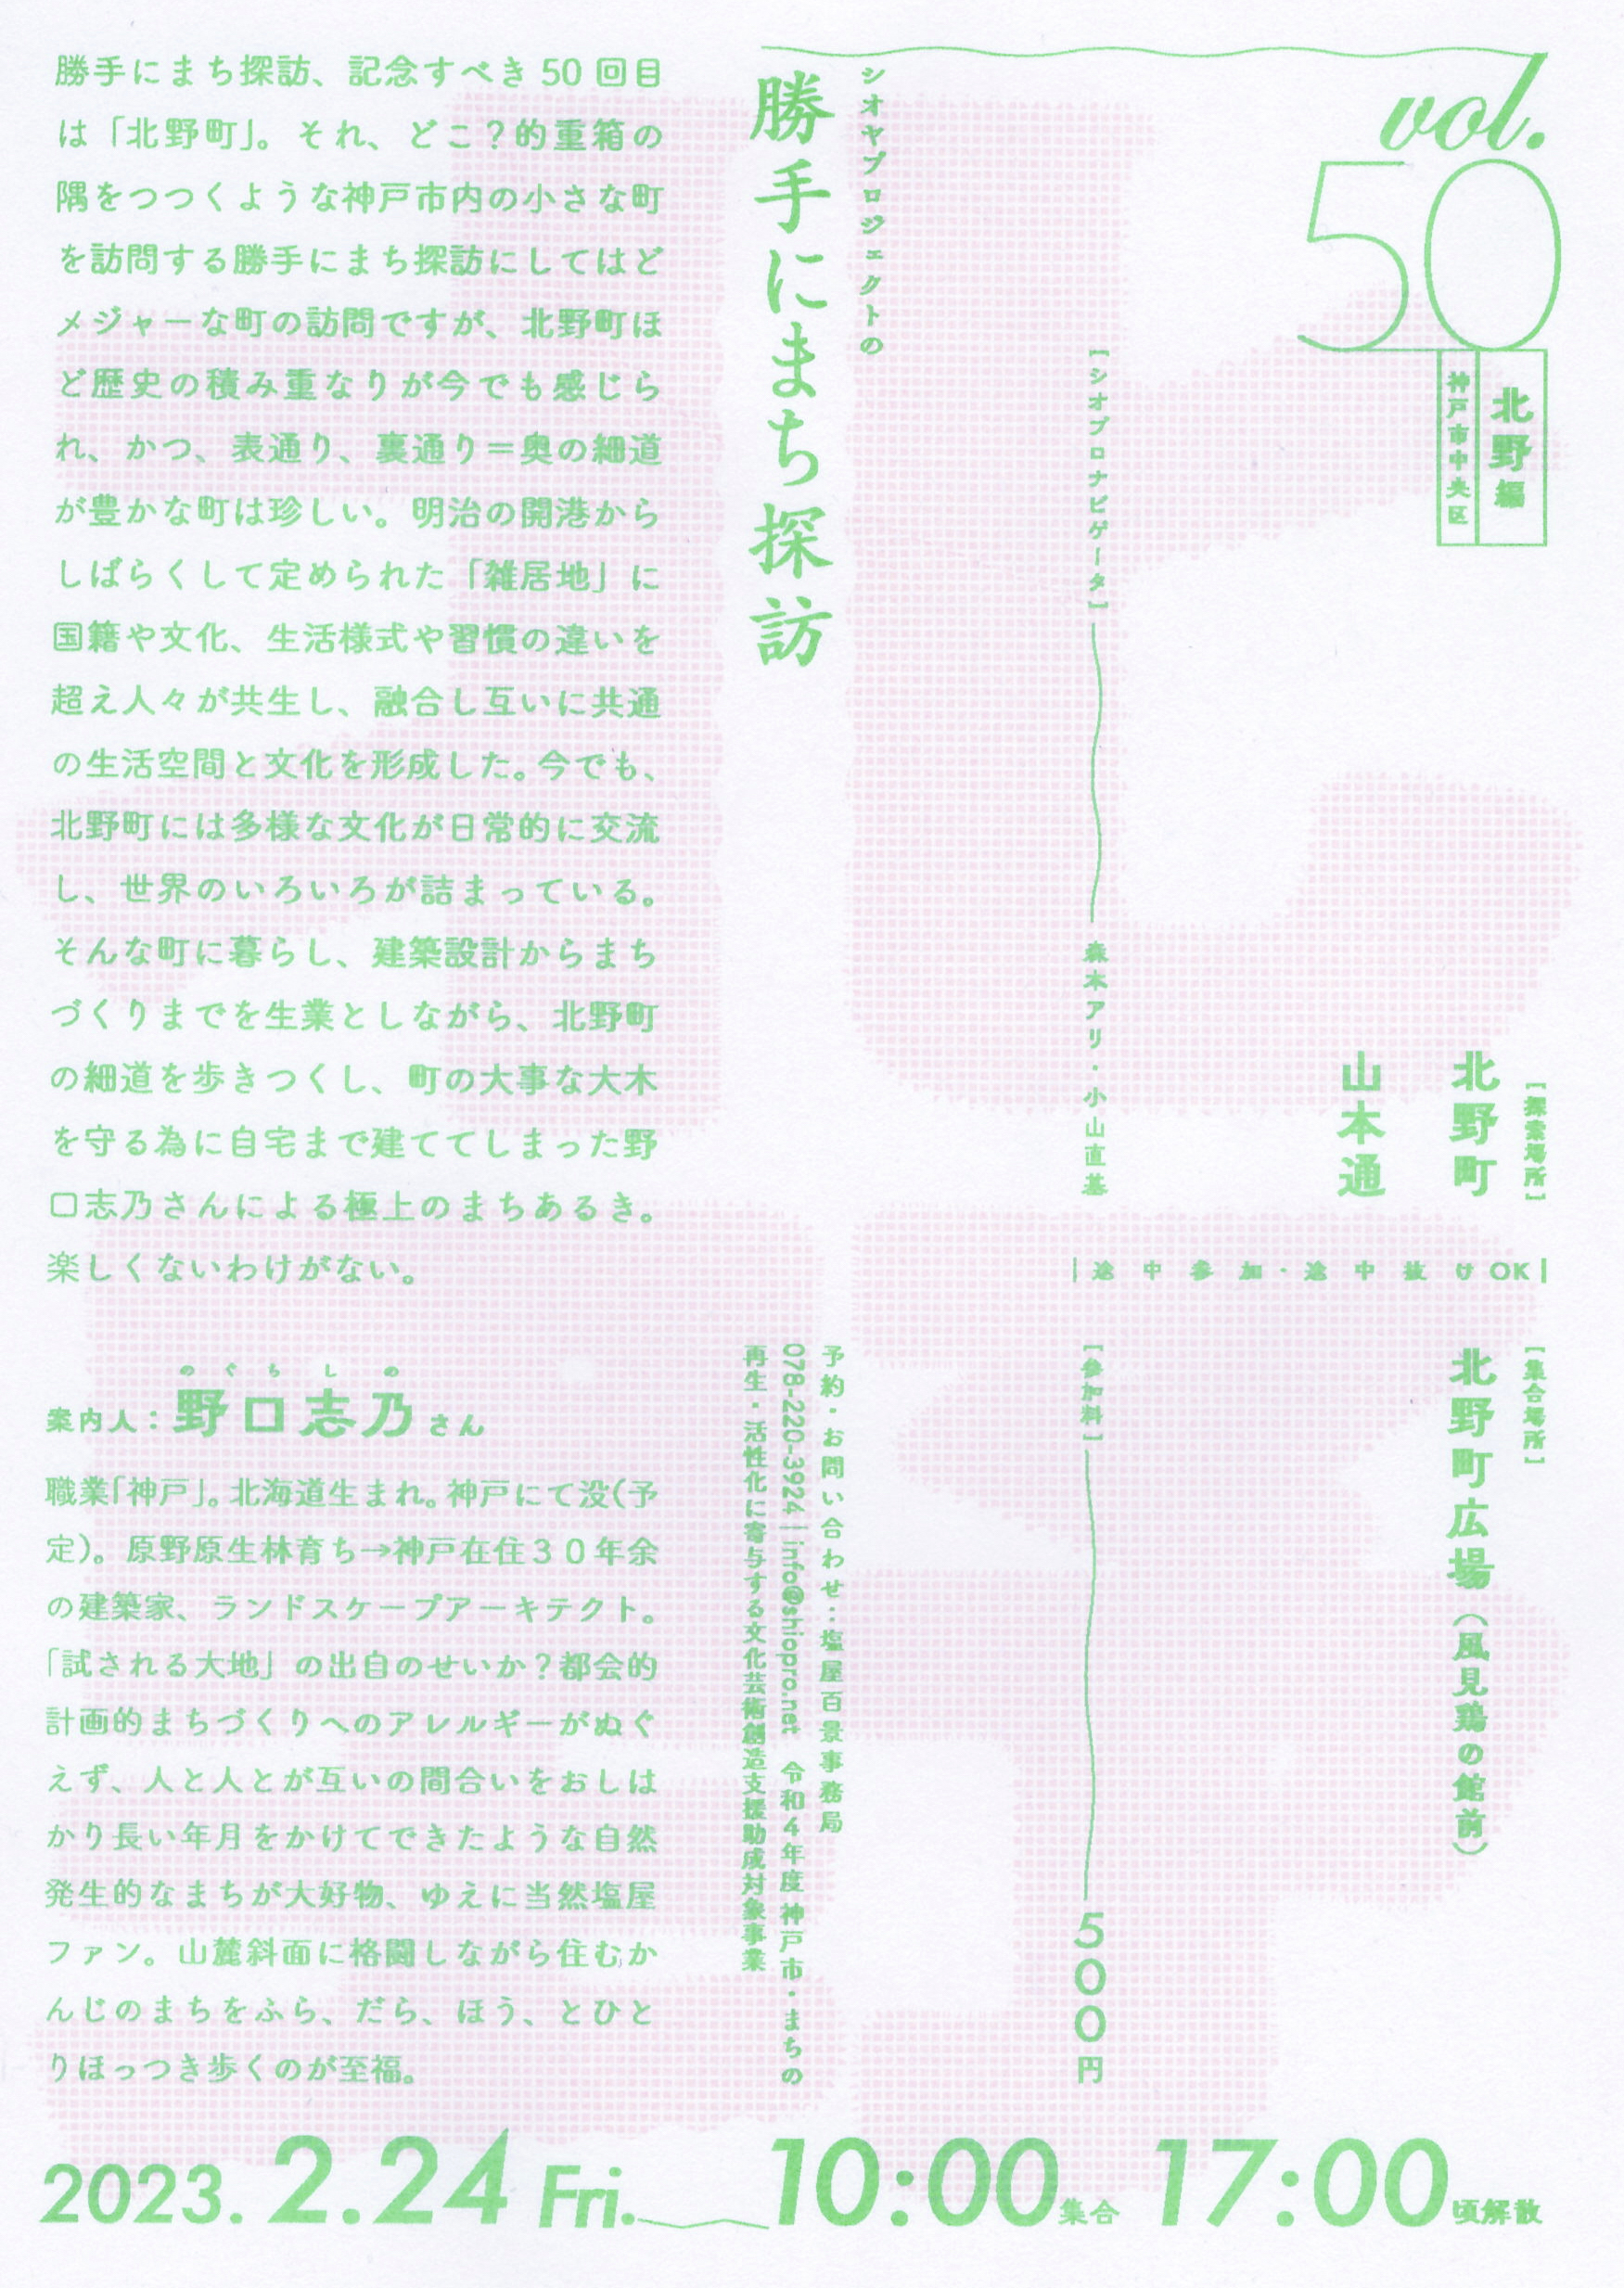 [日程変更]3/10(金) シオヤプロジェクトの勝手にまち探訪 vol.50 北野編